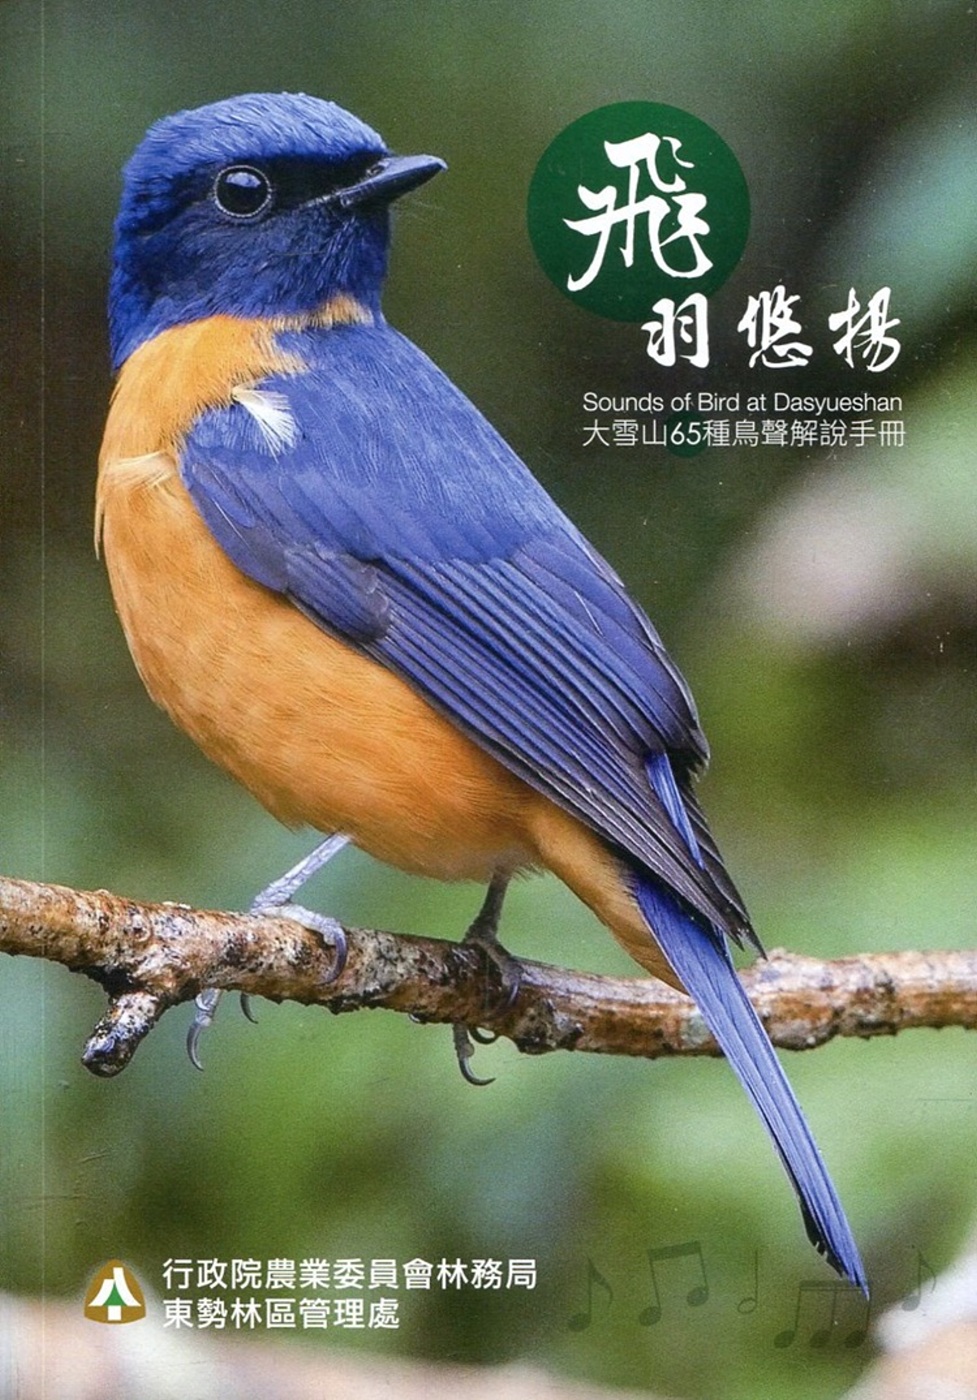 飛羽悠揚～大雪山65種鳥聲解說手冊